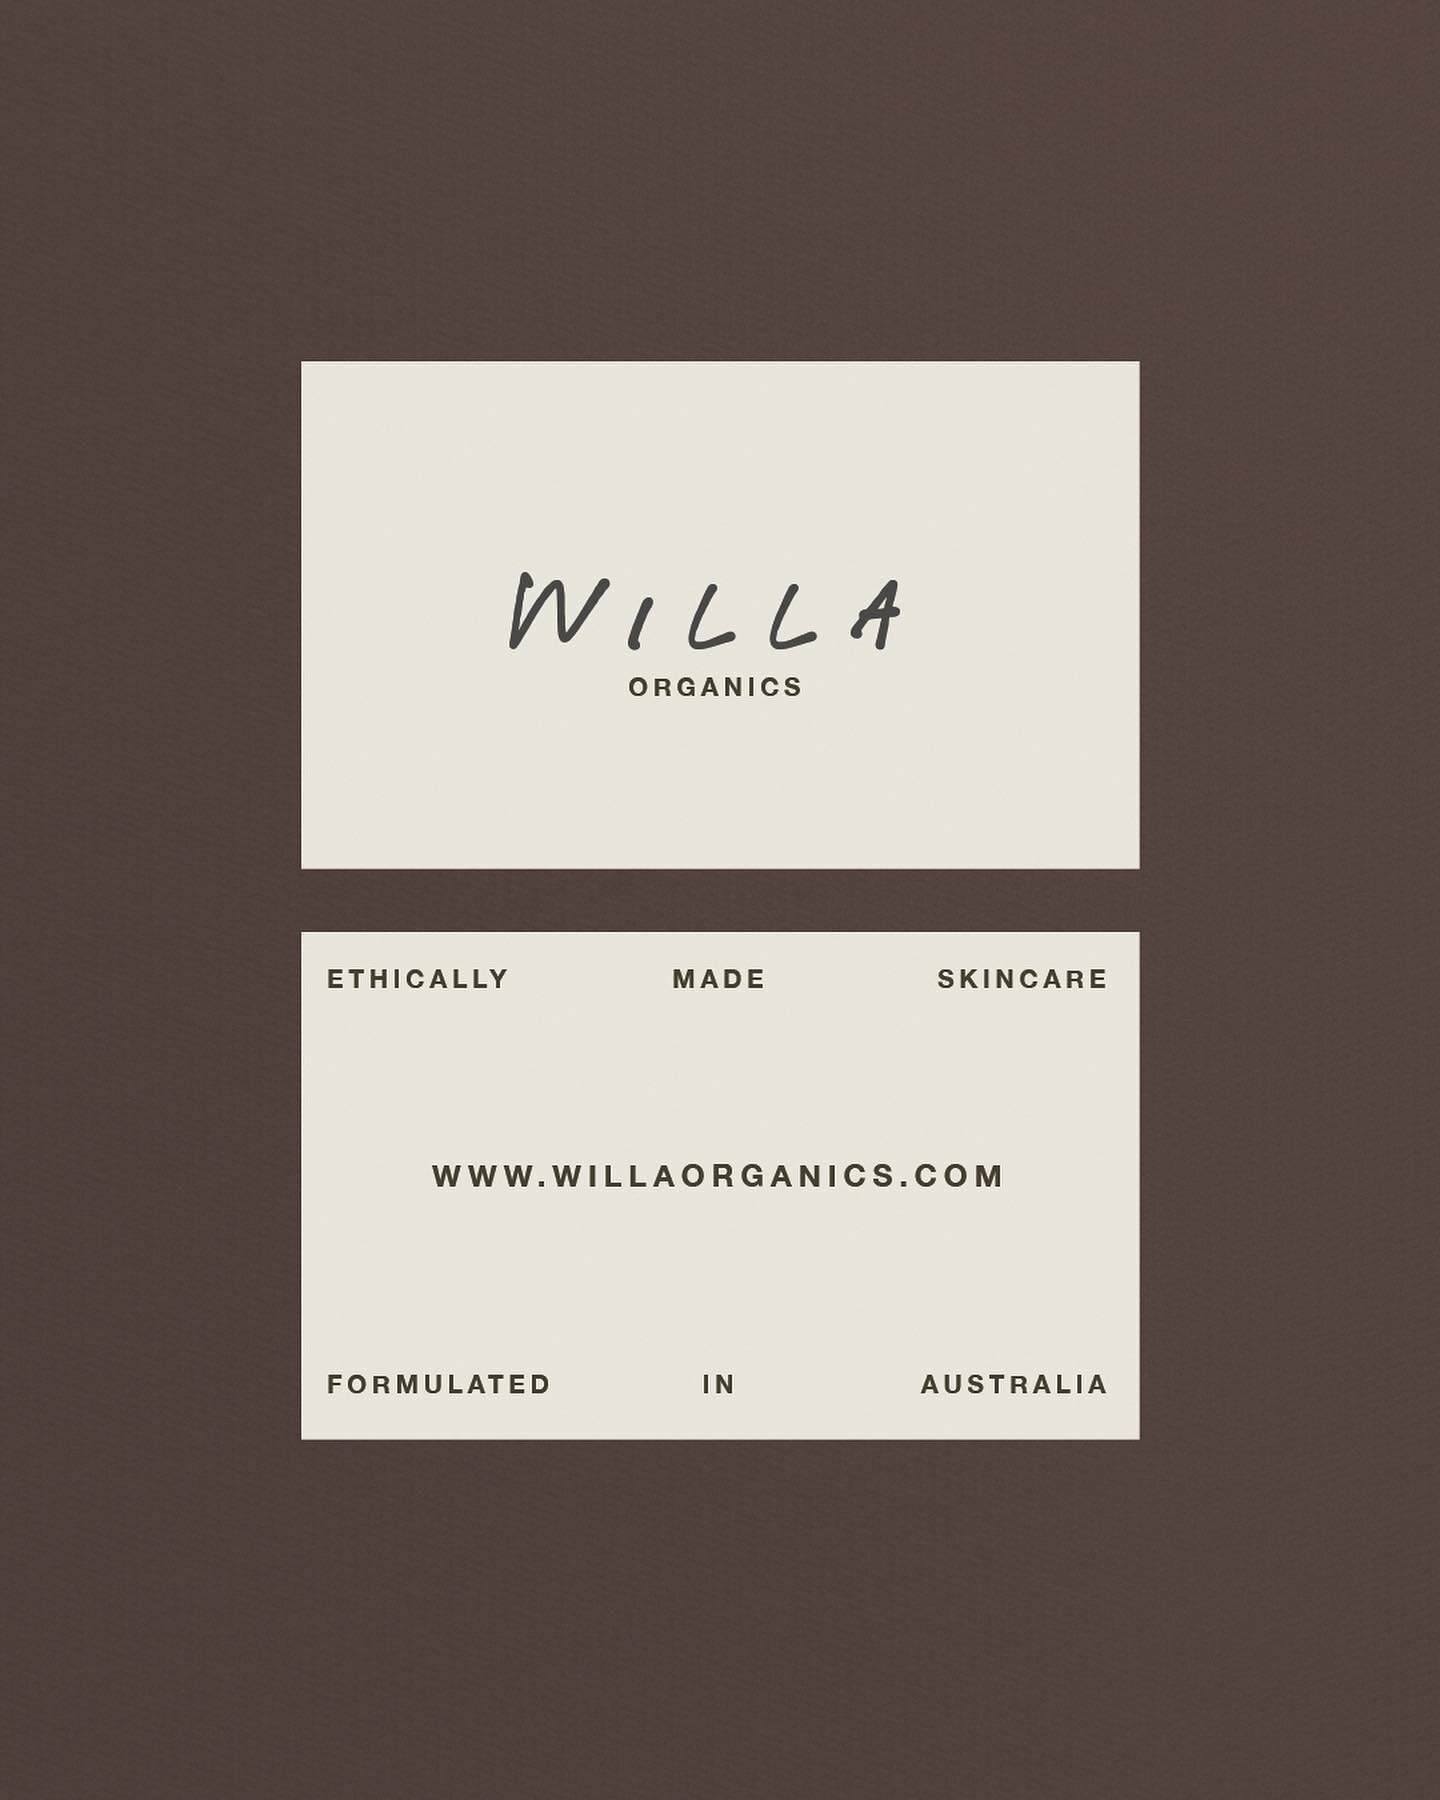 Collateral exploration for Willa 
.
.
.
.
#modernbranding #losangelesdesigner #lacreativeagency #minimalbranding #neutralaesthetic #skincarebranding